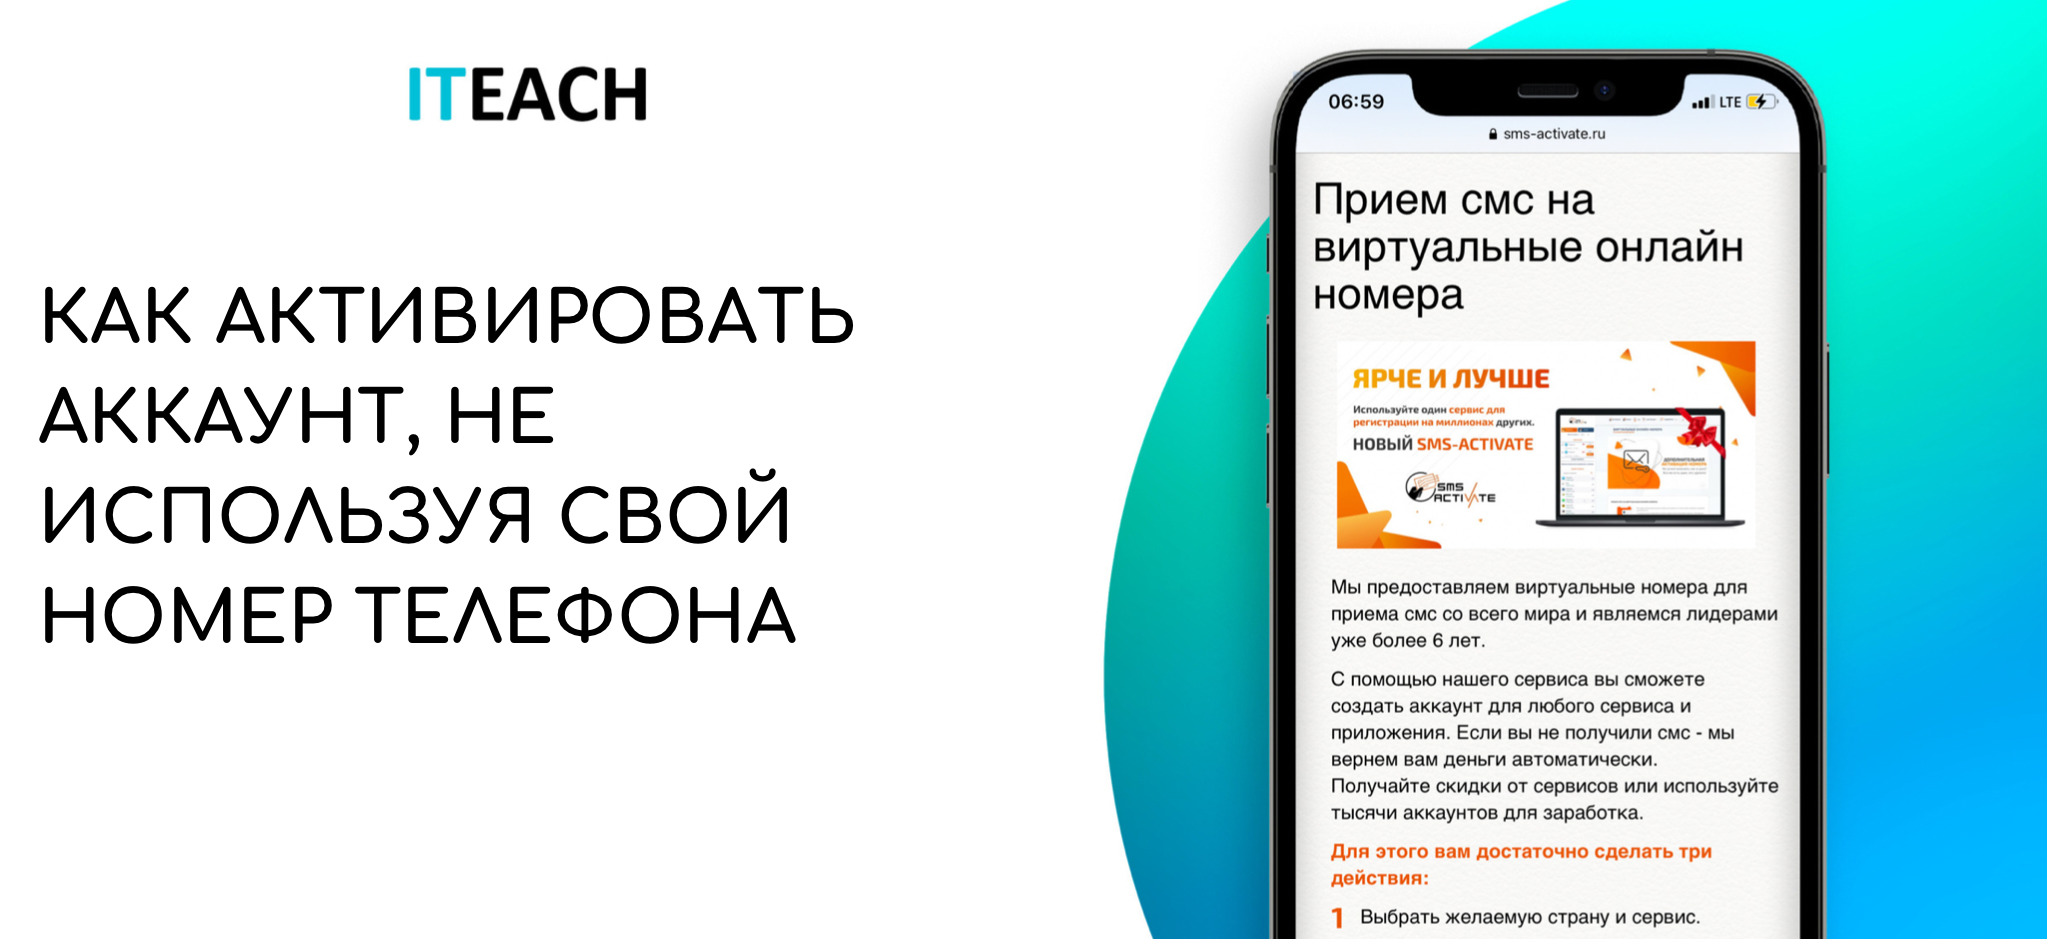 Телеграмм онлайн на русском вход по номеру телефона через смс бесплатно войти фото 32